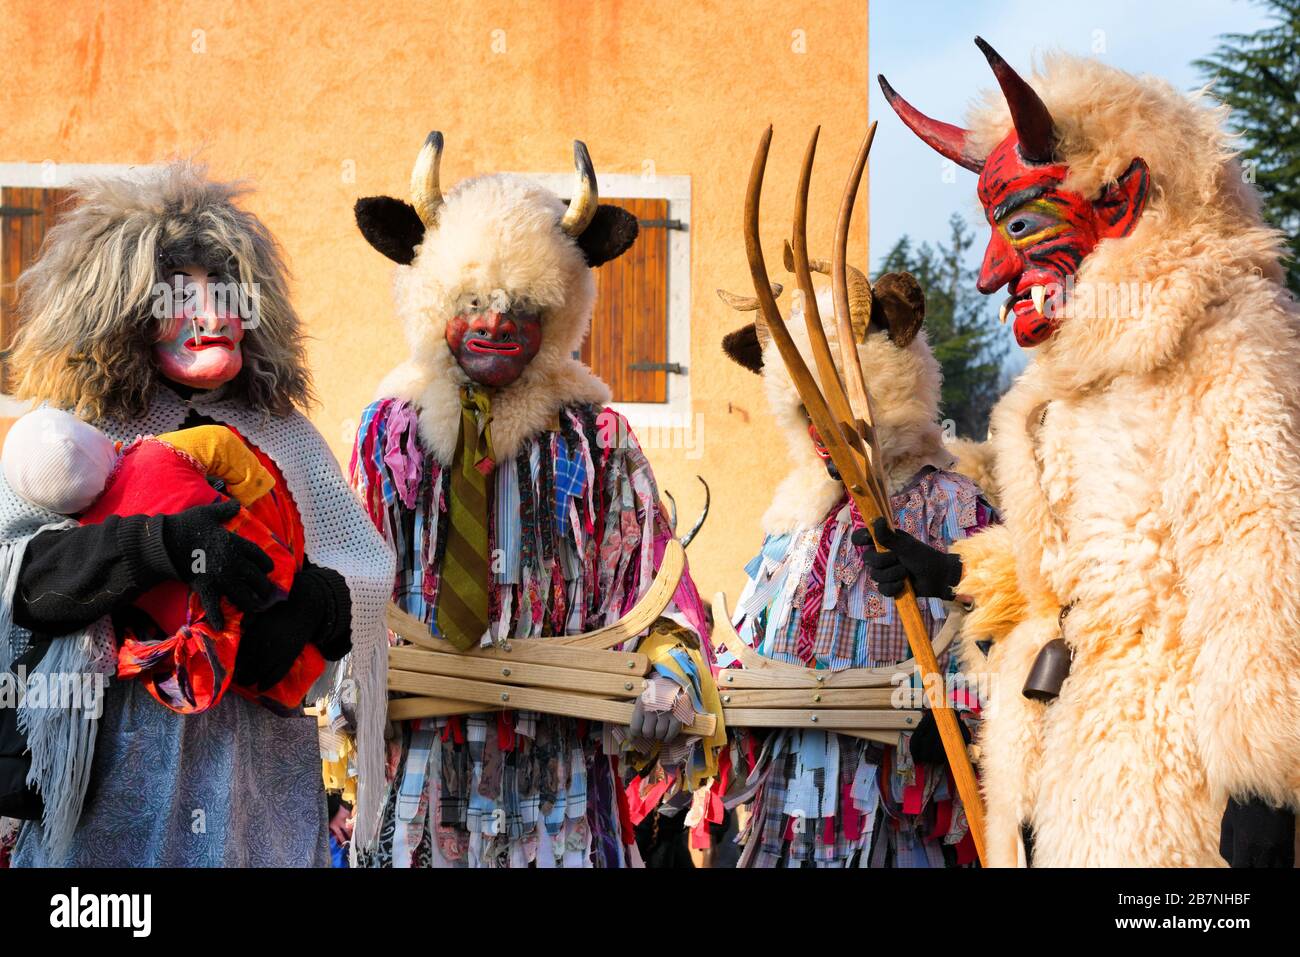 Des personnes non identifiées portant des costumes et des masques païens au défilé du carnaval de Pust. San Pietro al Natisone, Italie. Démons marchant dans la rue. Banque D'Images